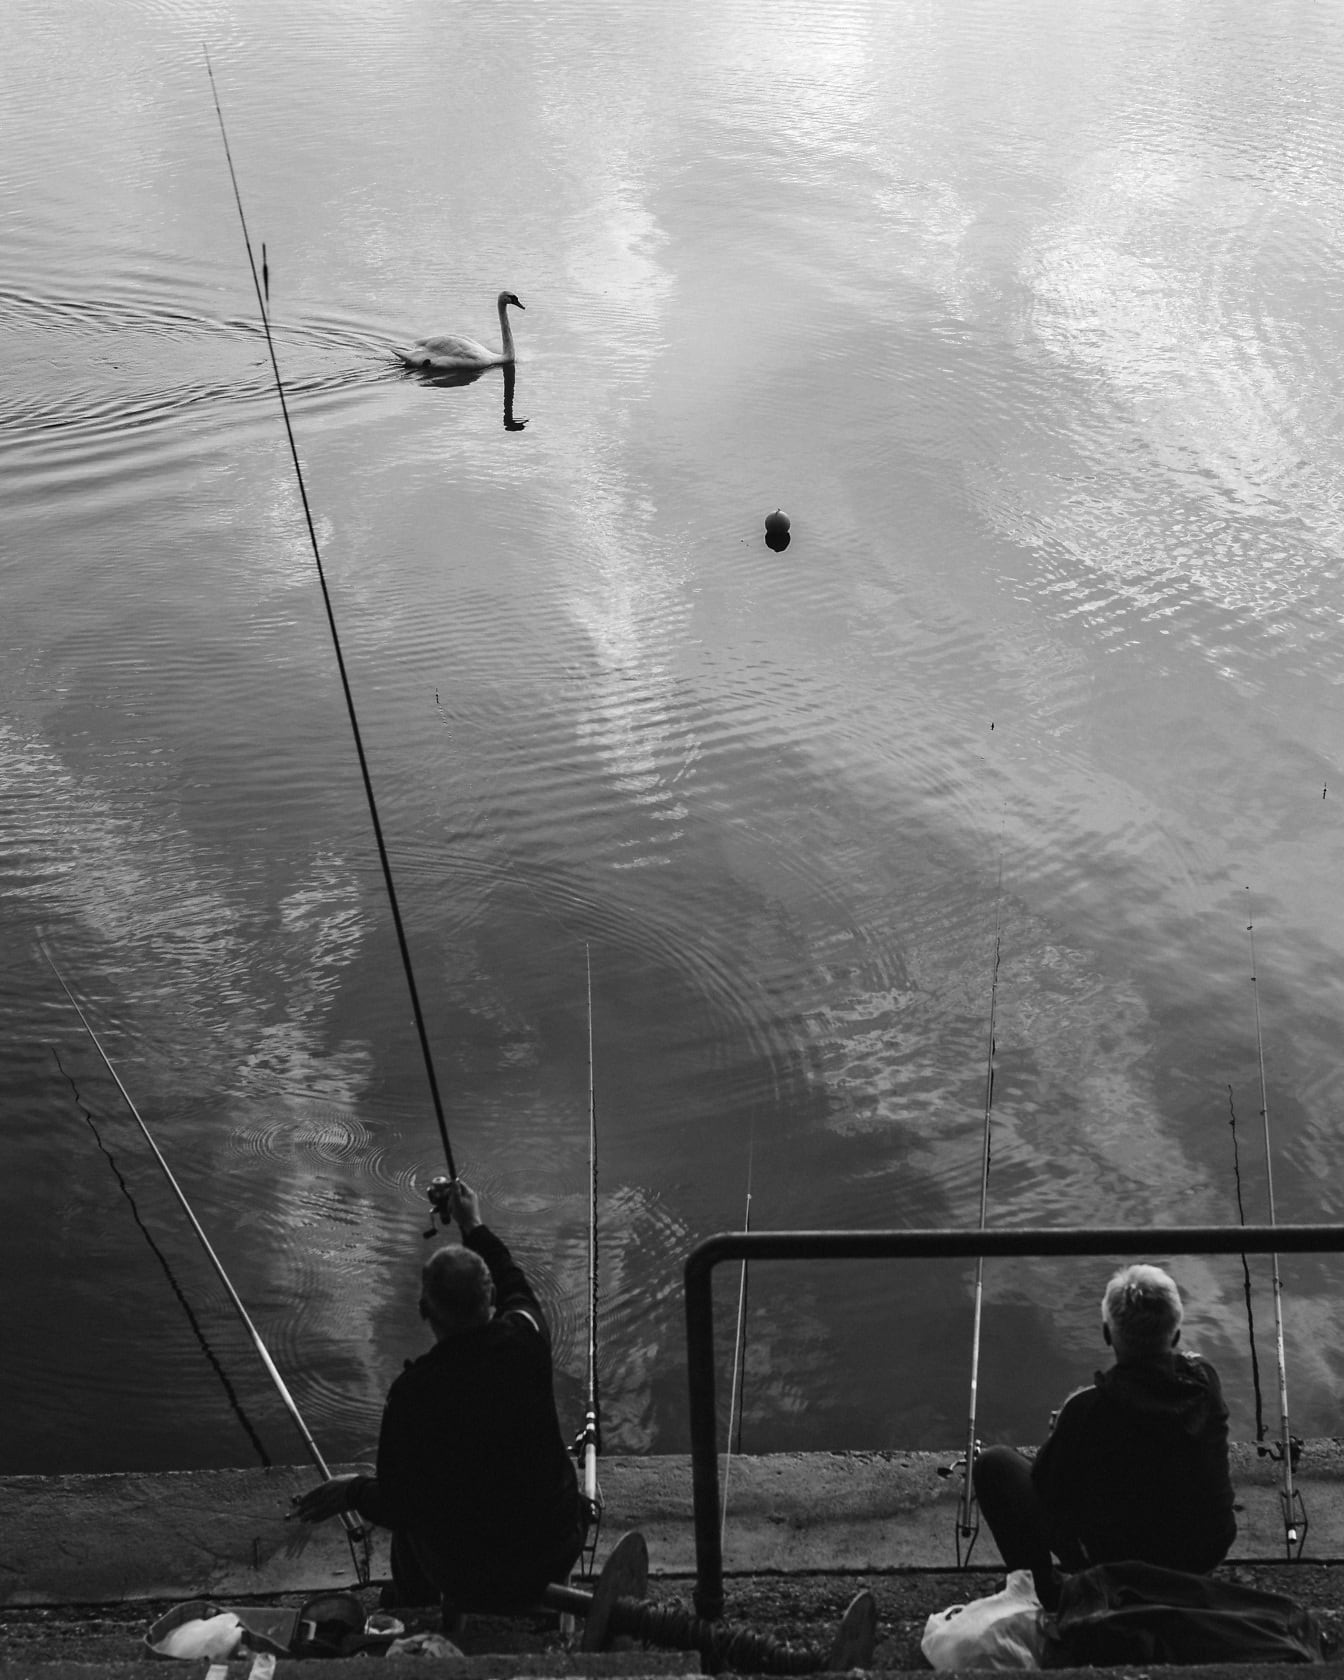 De zitting van de visser op concreate stair en het vissen met hengel